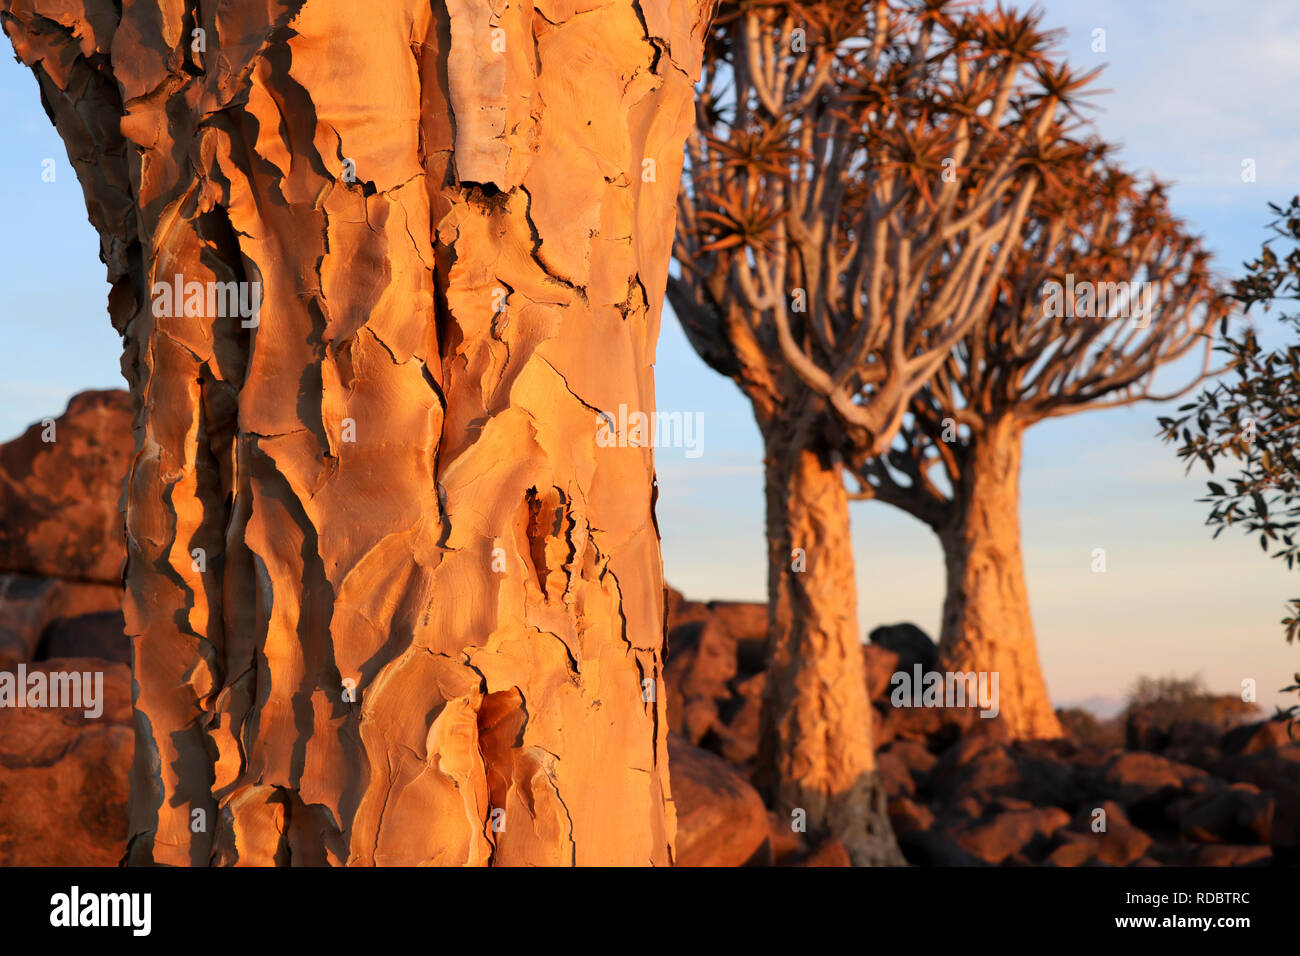 Köcherbaumwald in der Nähe von Keetmanshoop - Baumrinde und Aloe dichotomas - Namibia Stockfoto